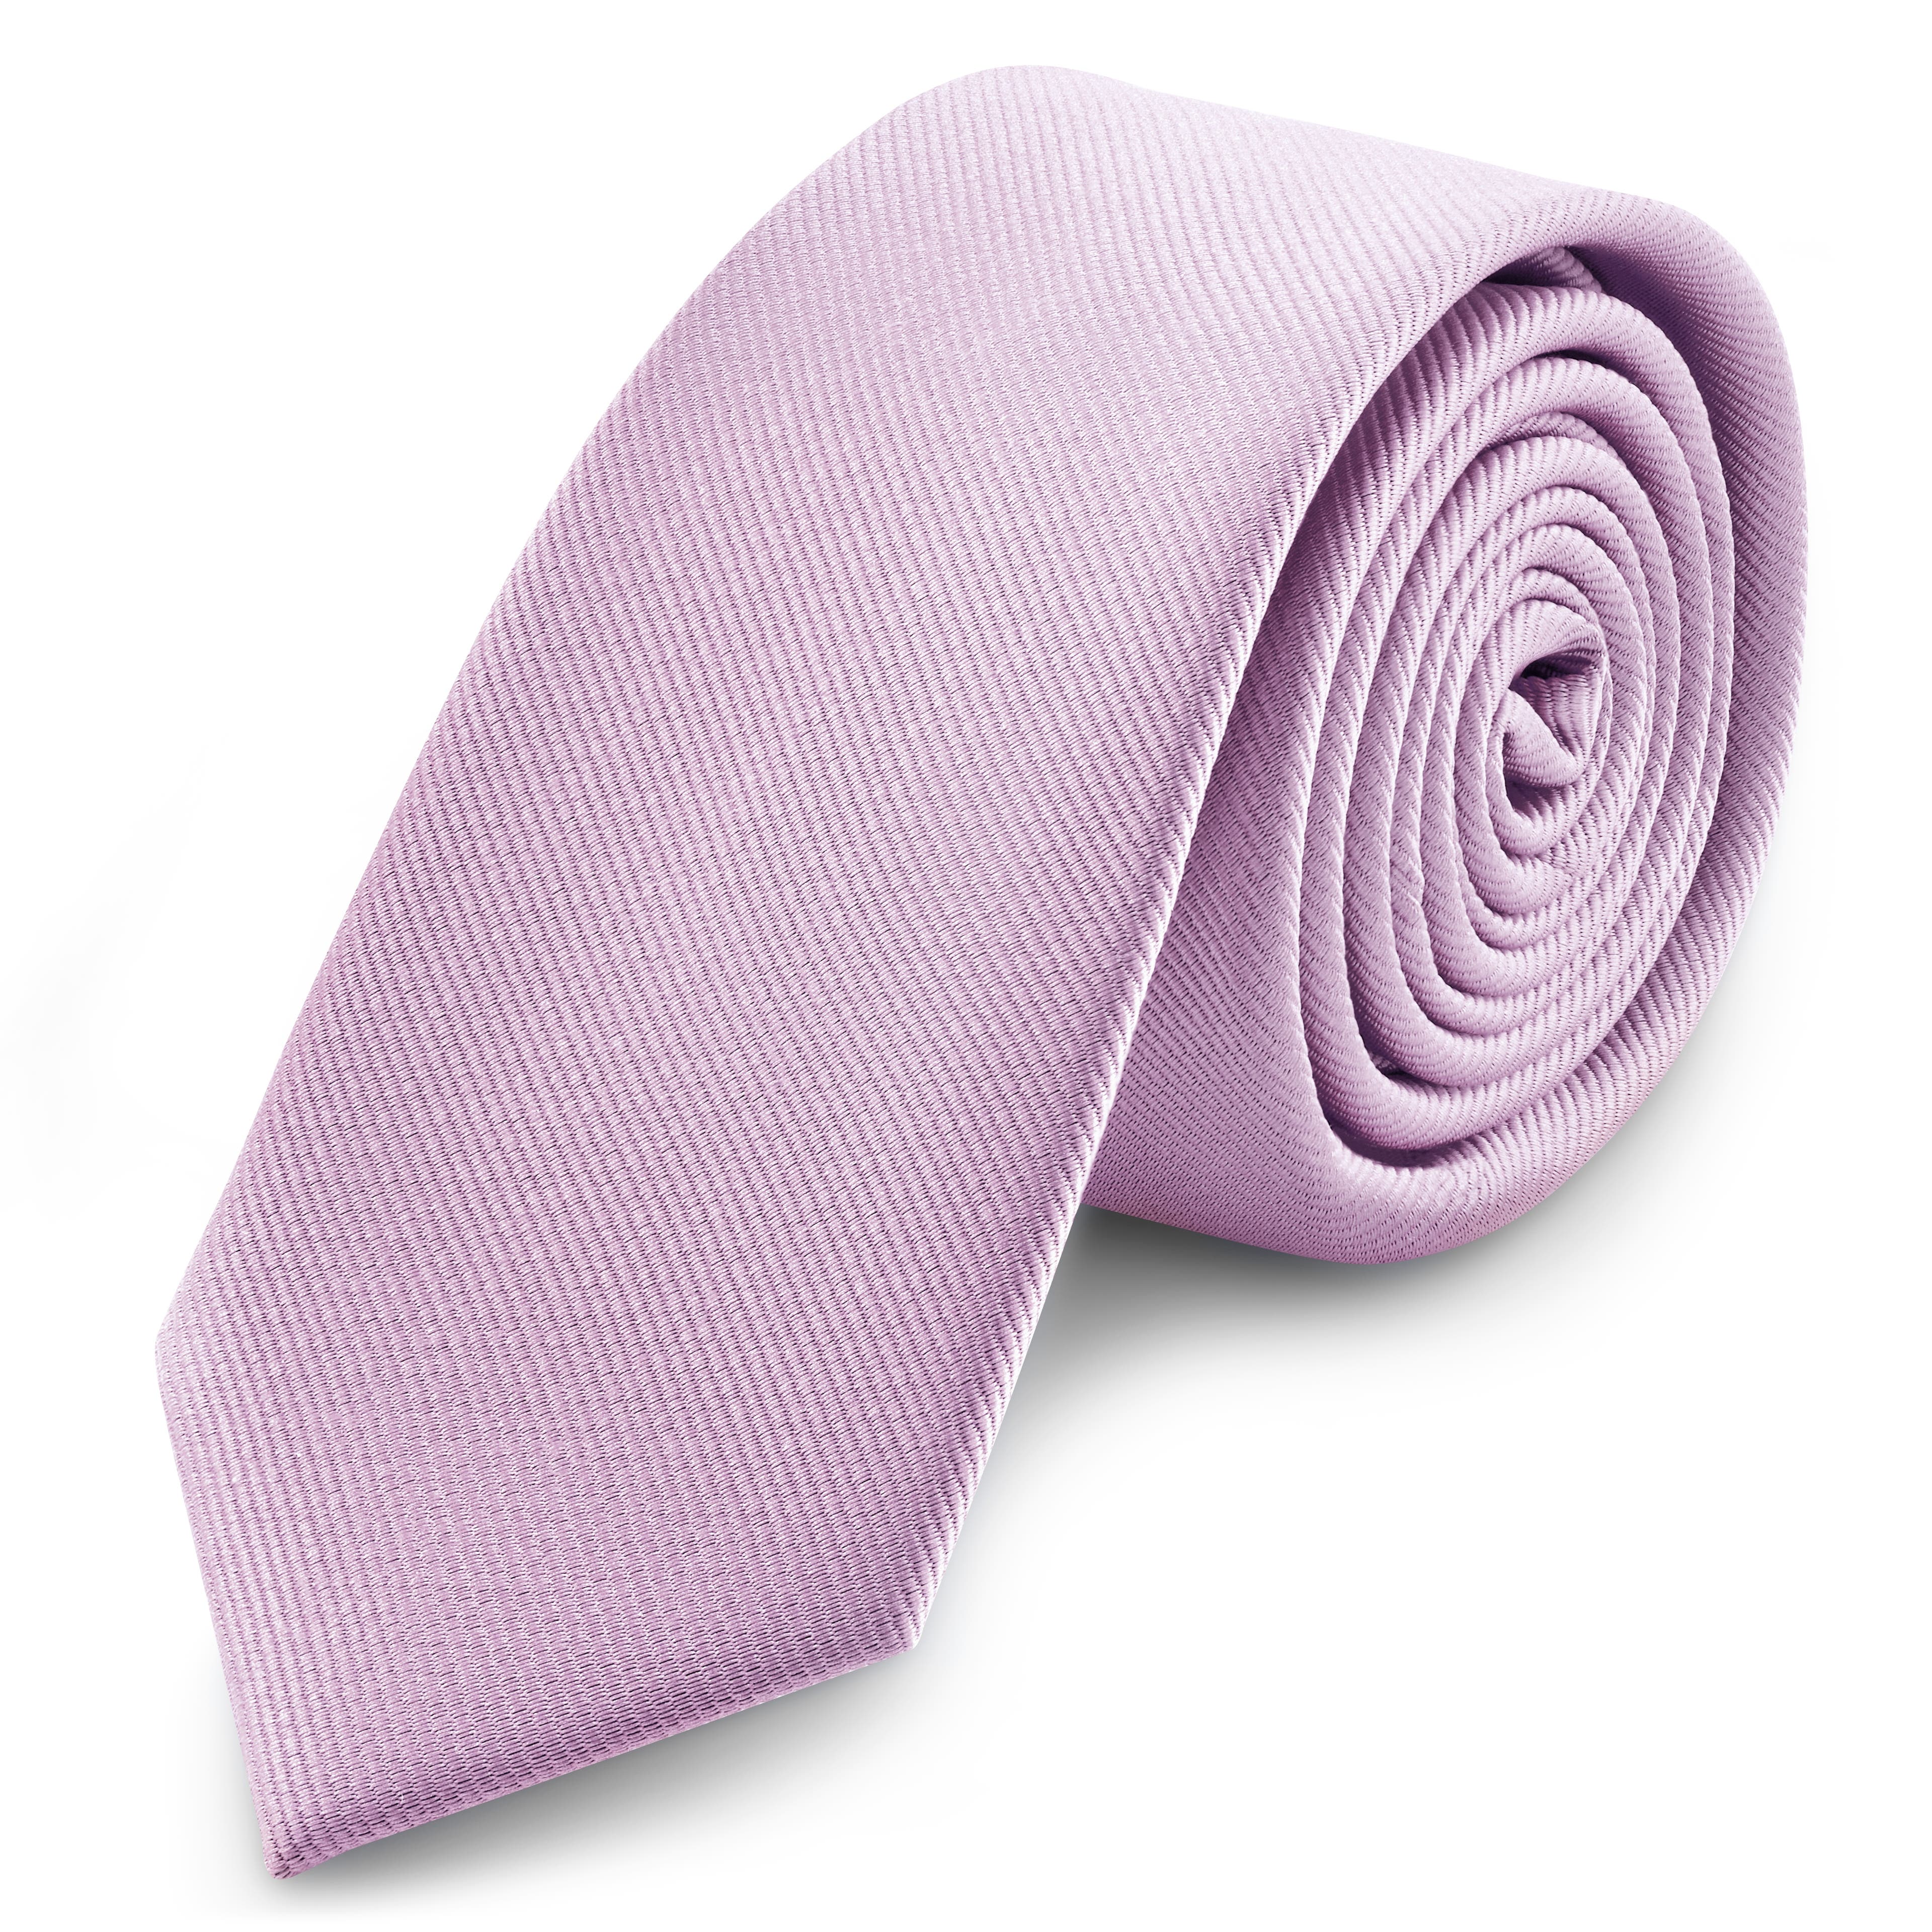 Cravate étroite en tissu gros-grain violet clair 6 cm